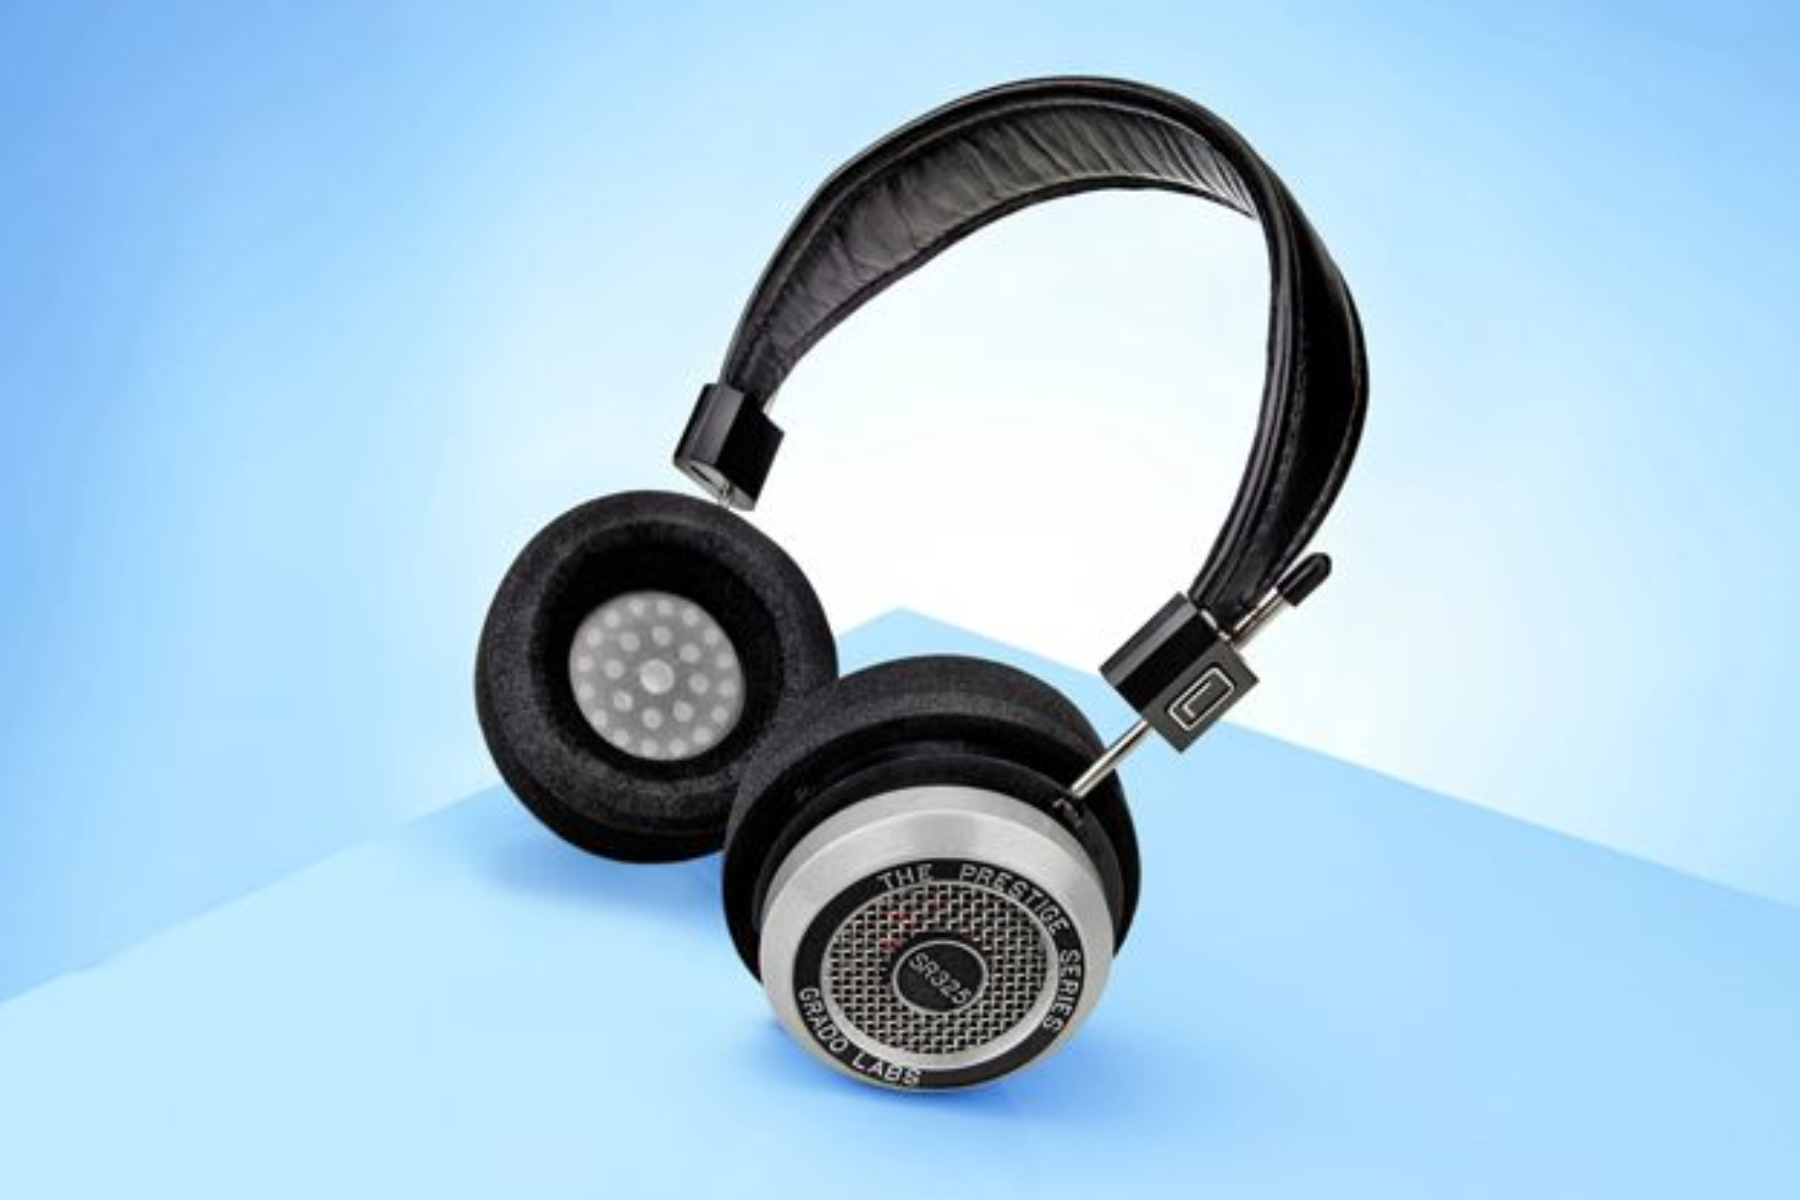 Grado SR325e headphone